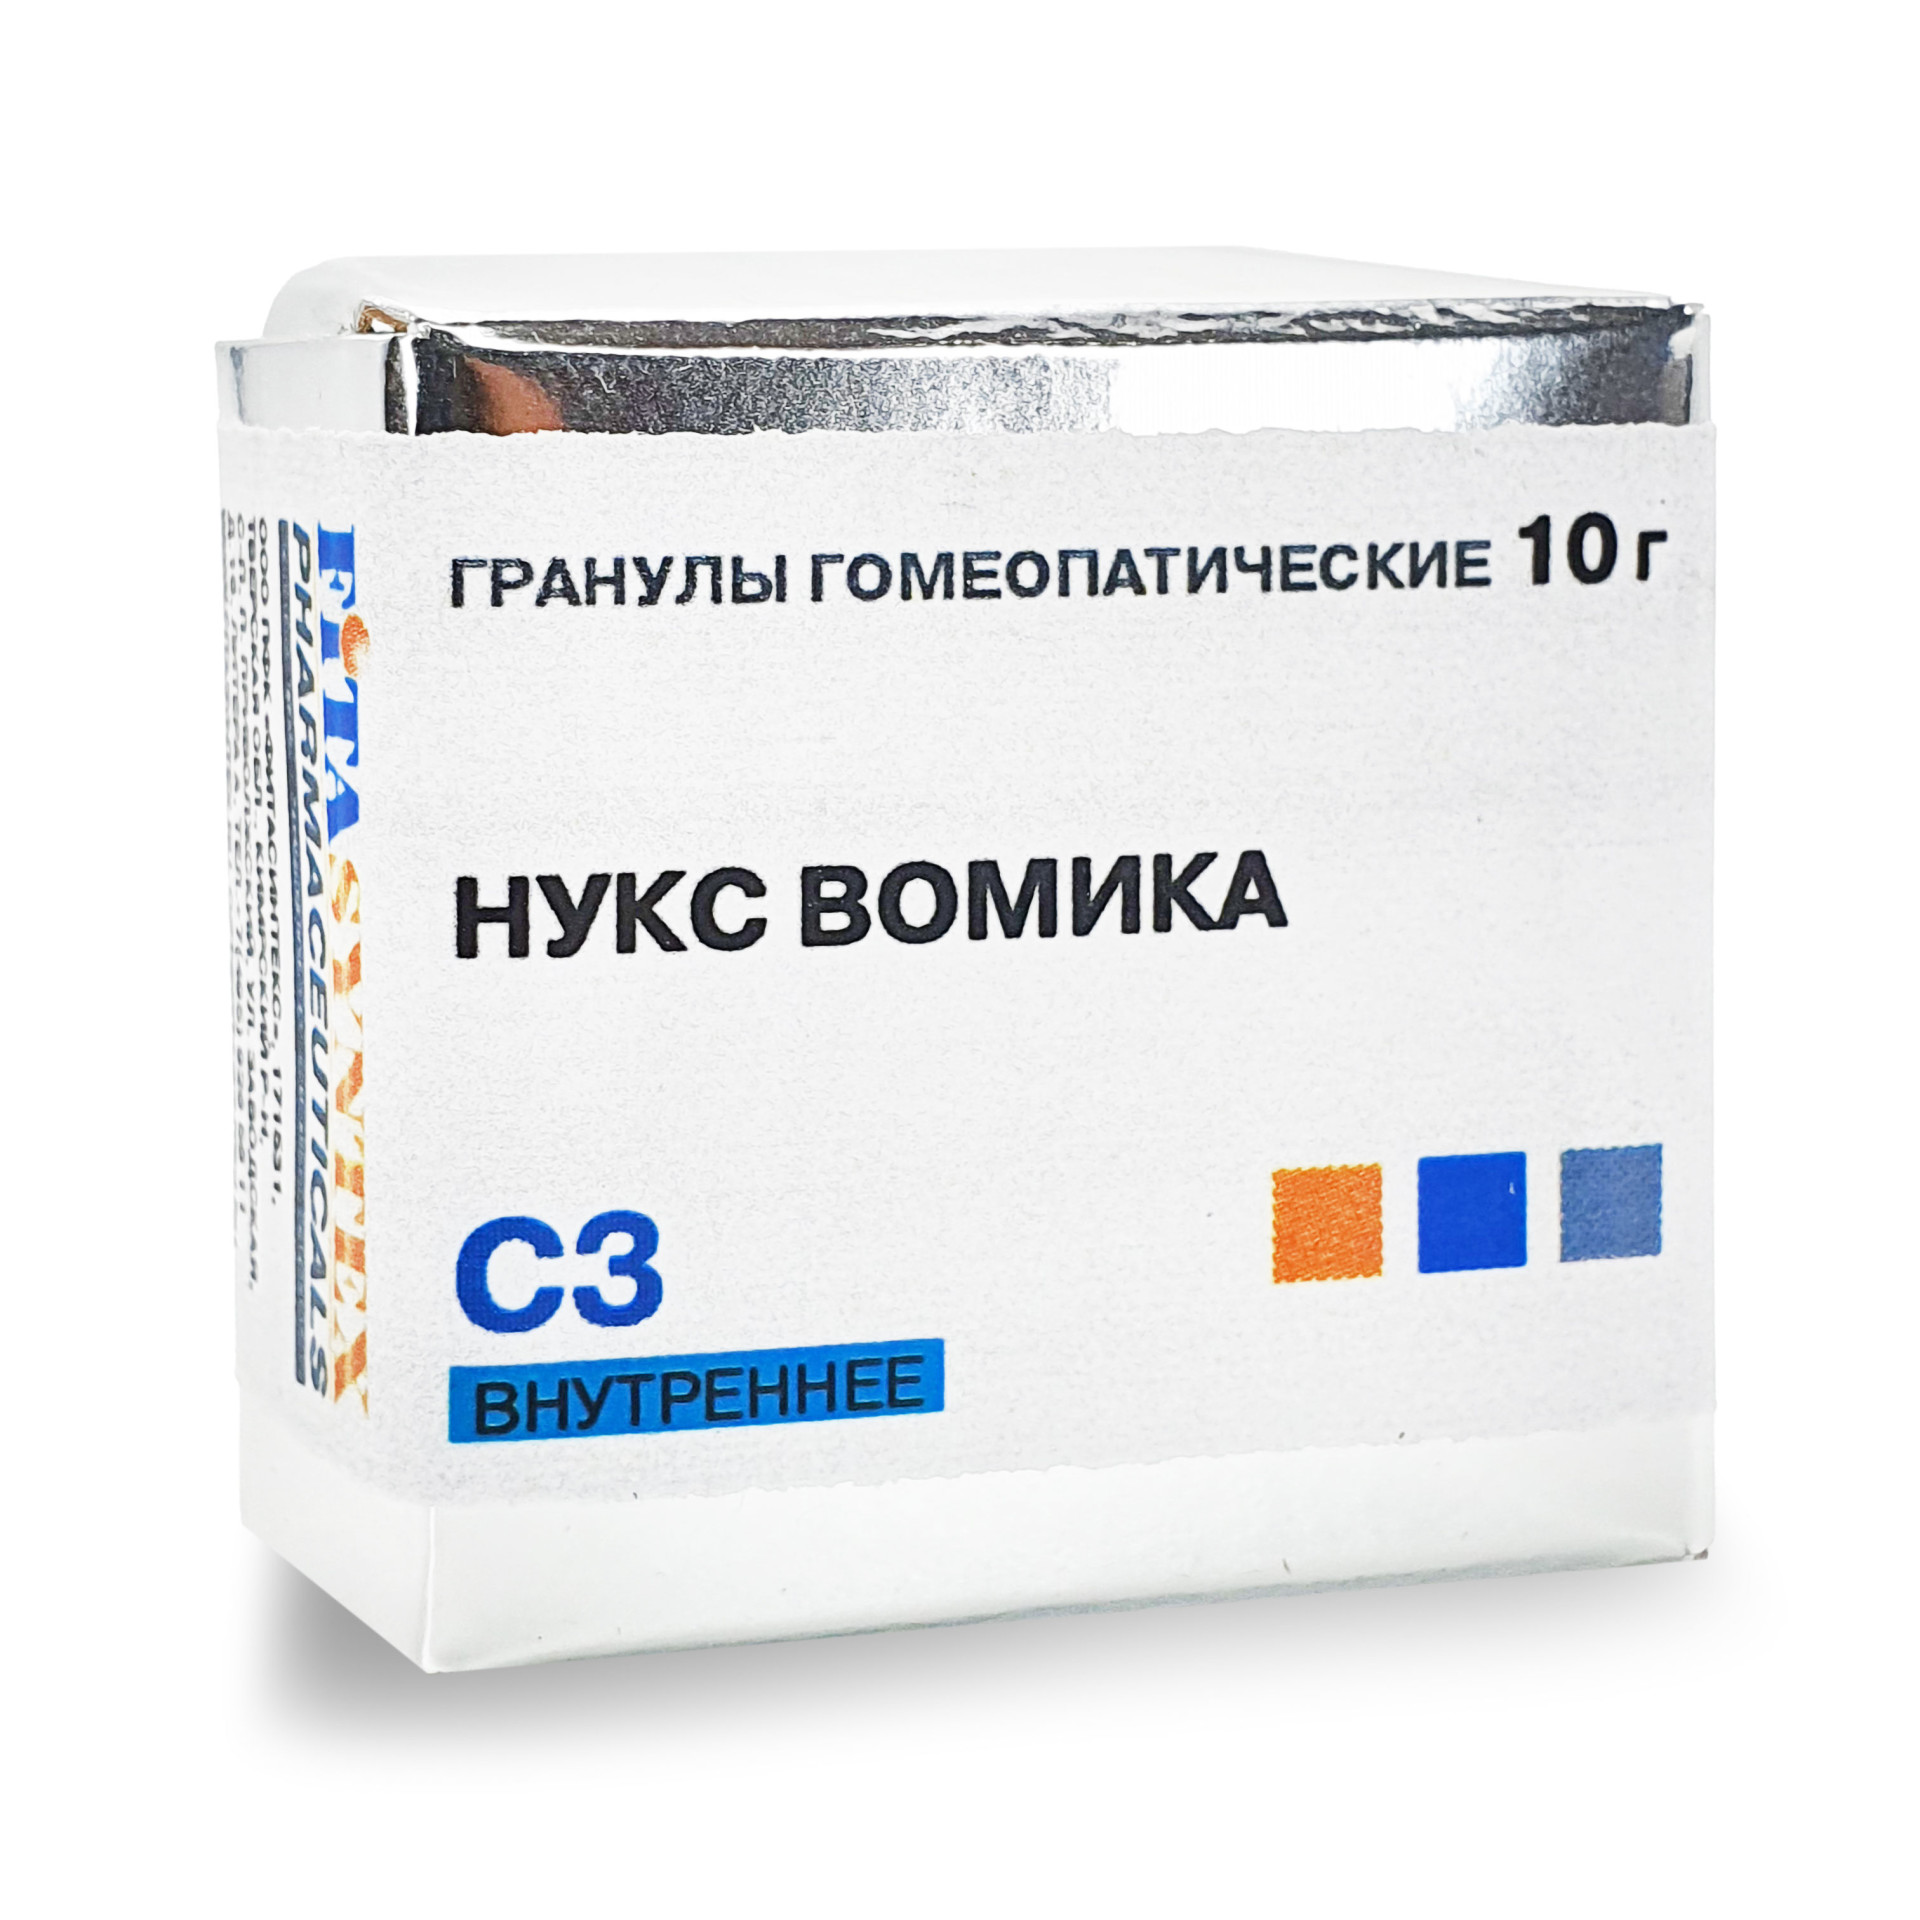 Нукс Вомика (Стрихнос) С-3 гранулы 10г  в Старой Руссе по цене от .